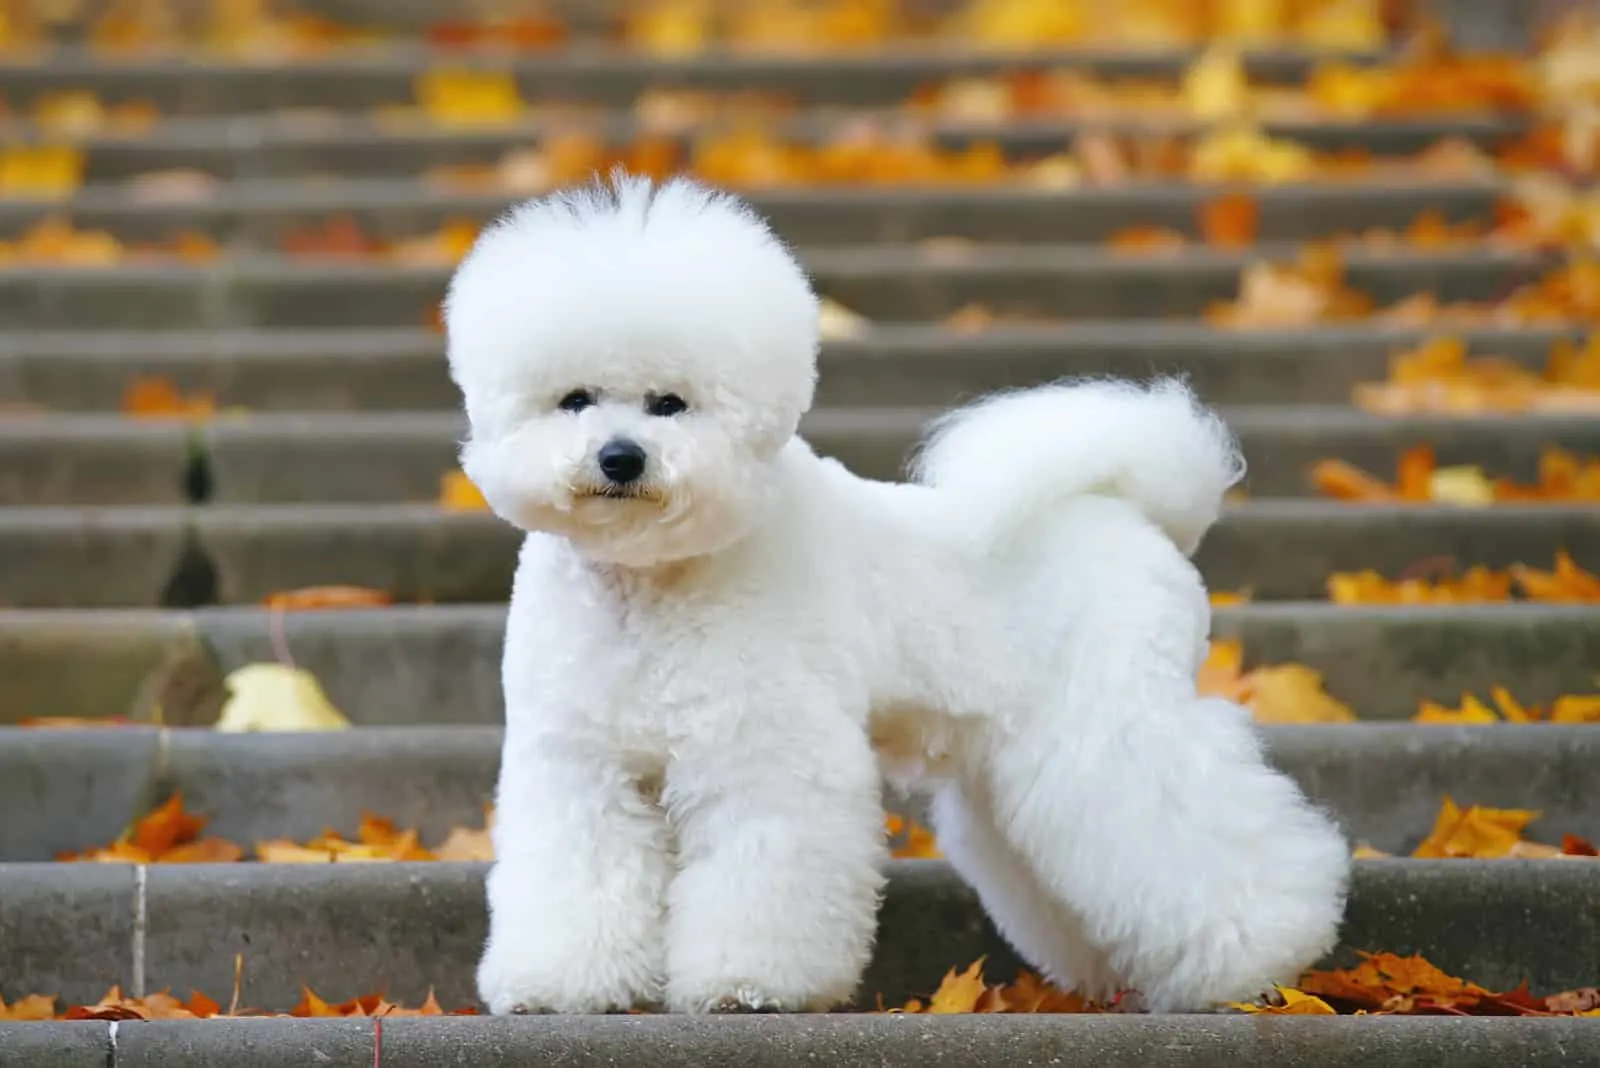 Bichon Frise dog with a stylish haircut